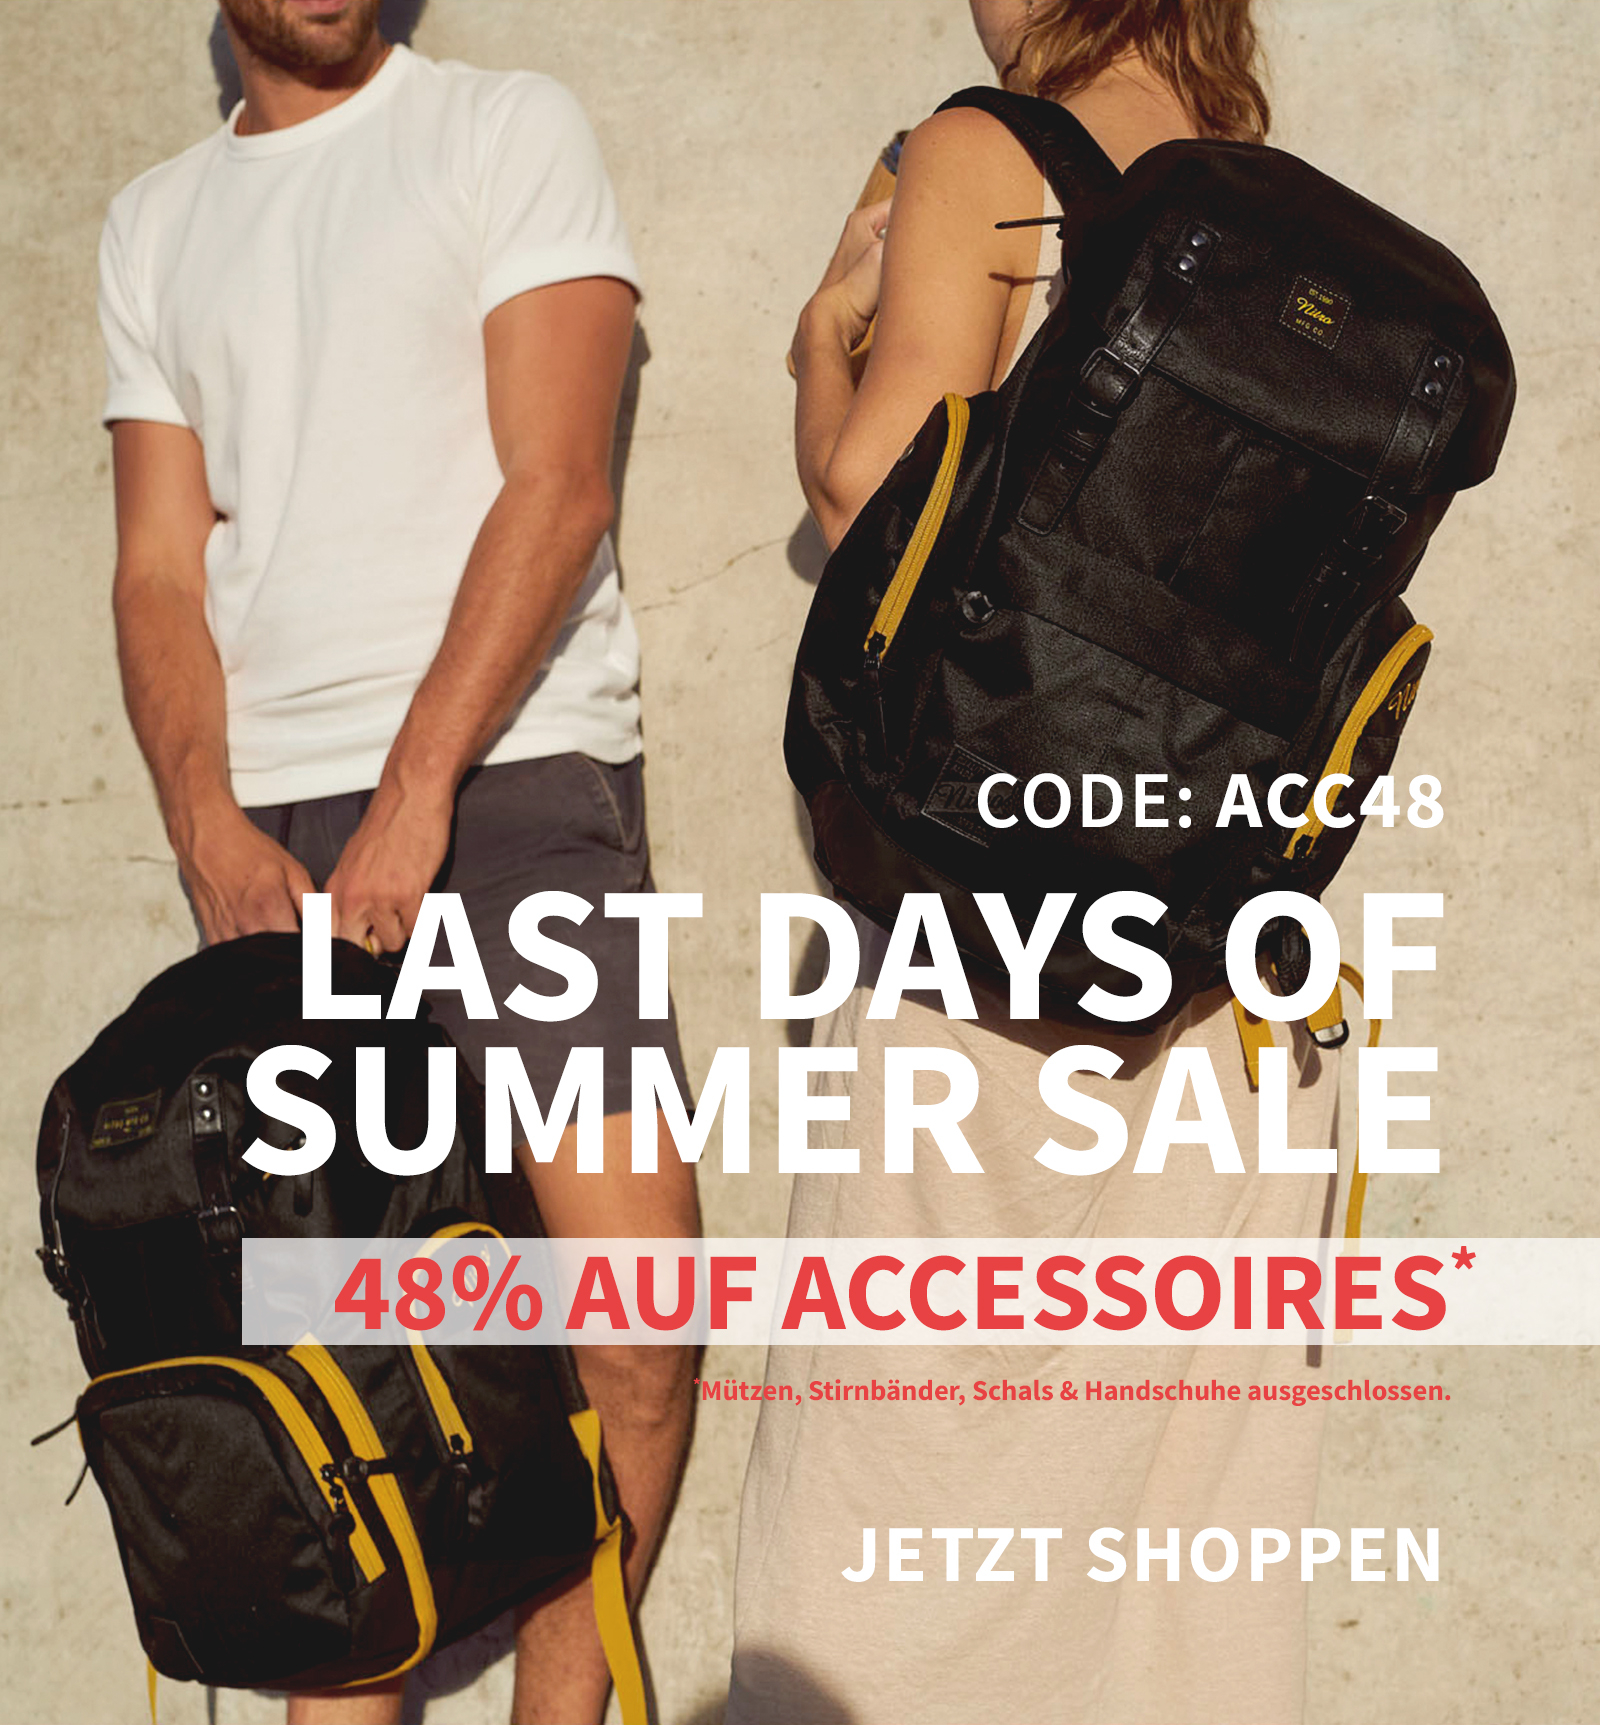 Summer Sale Mobile-Banner für Accessoires, zentral zwei stehende Personen mit Rucksäcken